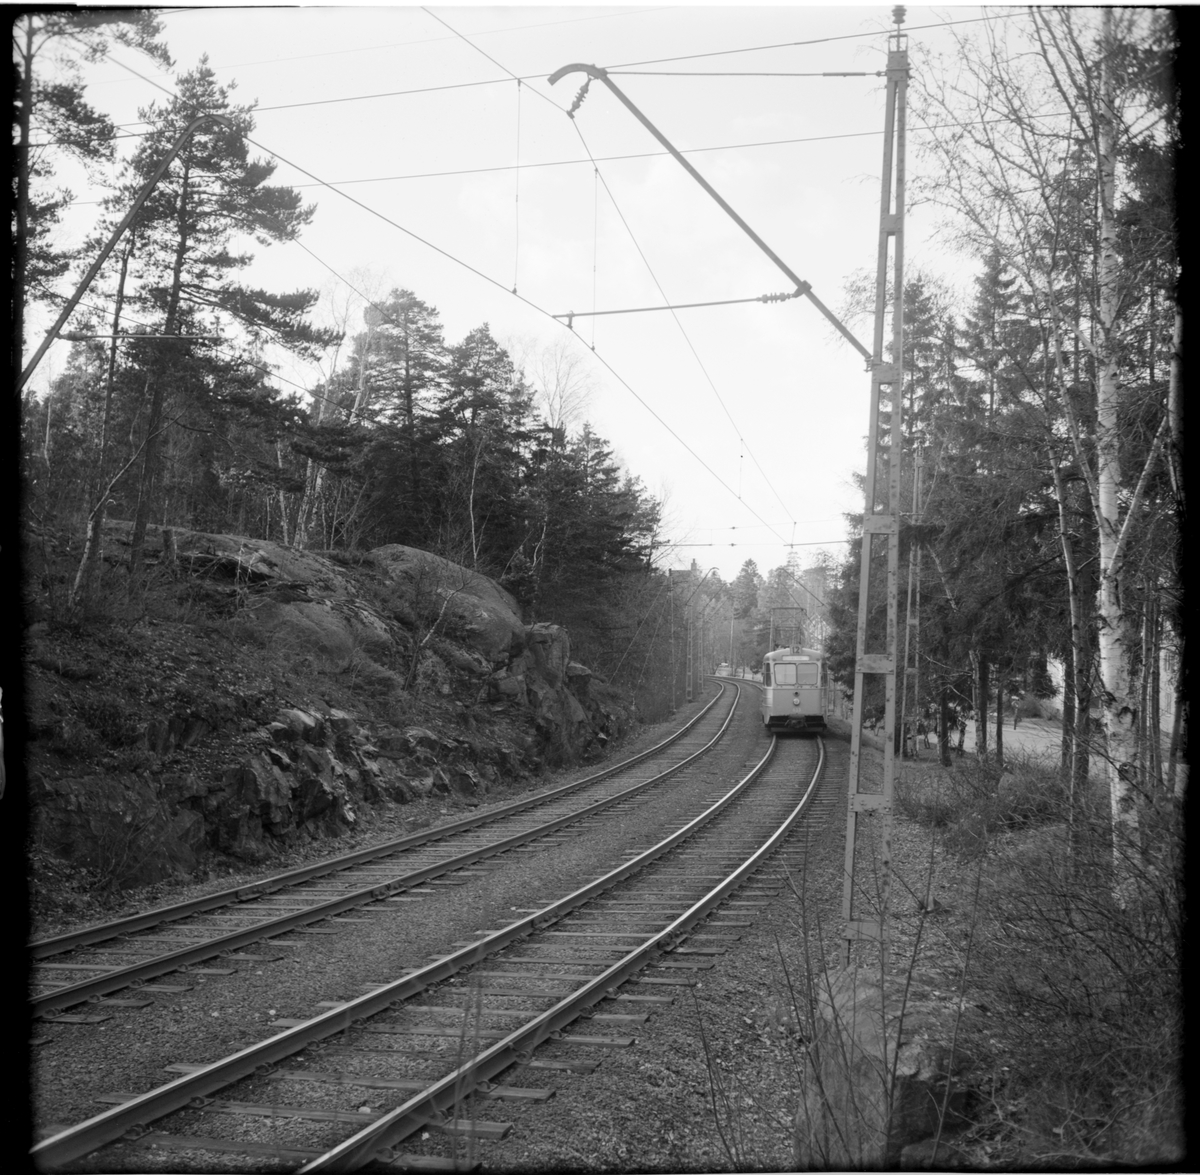 Aktiebolaget Stockholms Spårvägar, SS B24 633 "ängbyvagn" linje 12 Alvik mellan Nockebytorg och Nockeby. Vagn utåt.